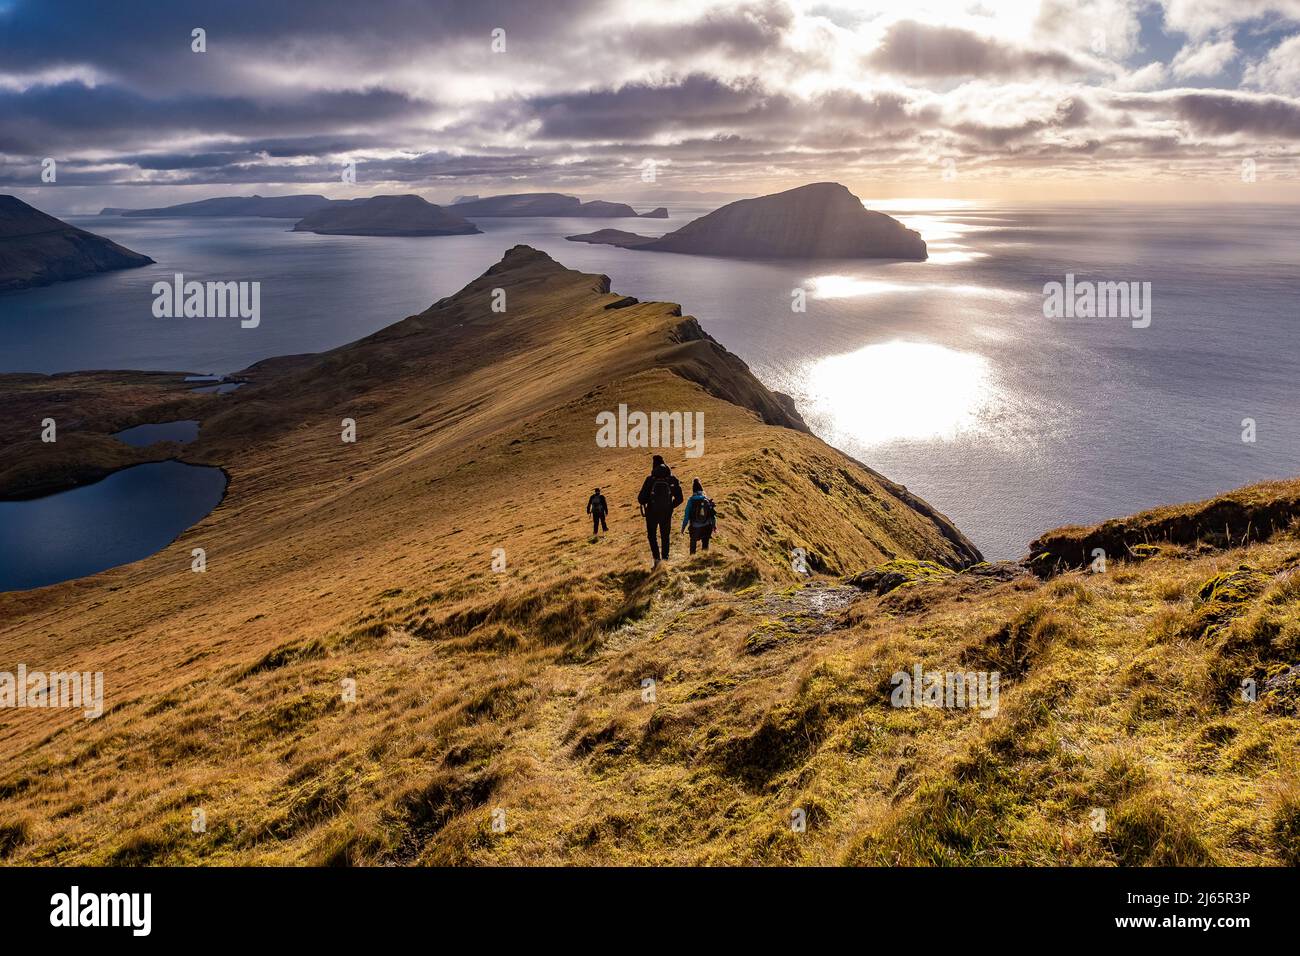 Wandergruppe auf den Färöern,herbstliche Gegenlichtstimmung mit Wolken und Sonne - hiking group on the Faroe Islands Stock Photo